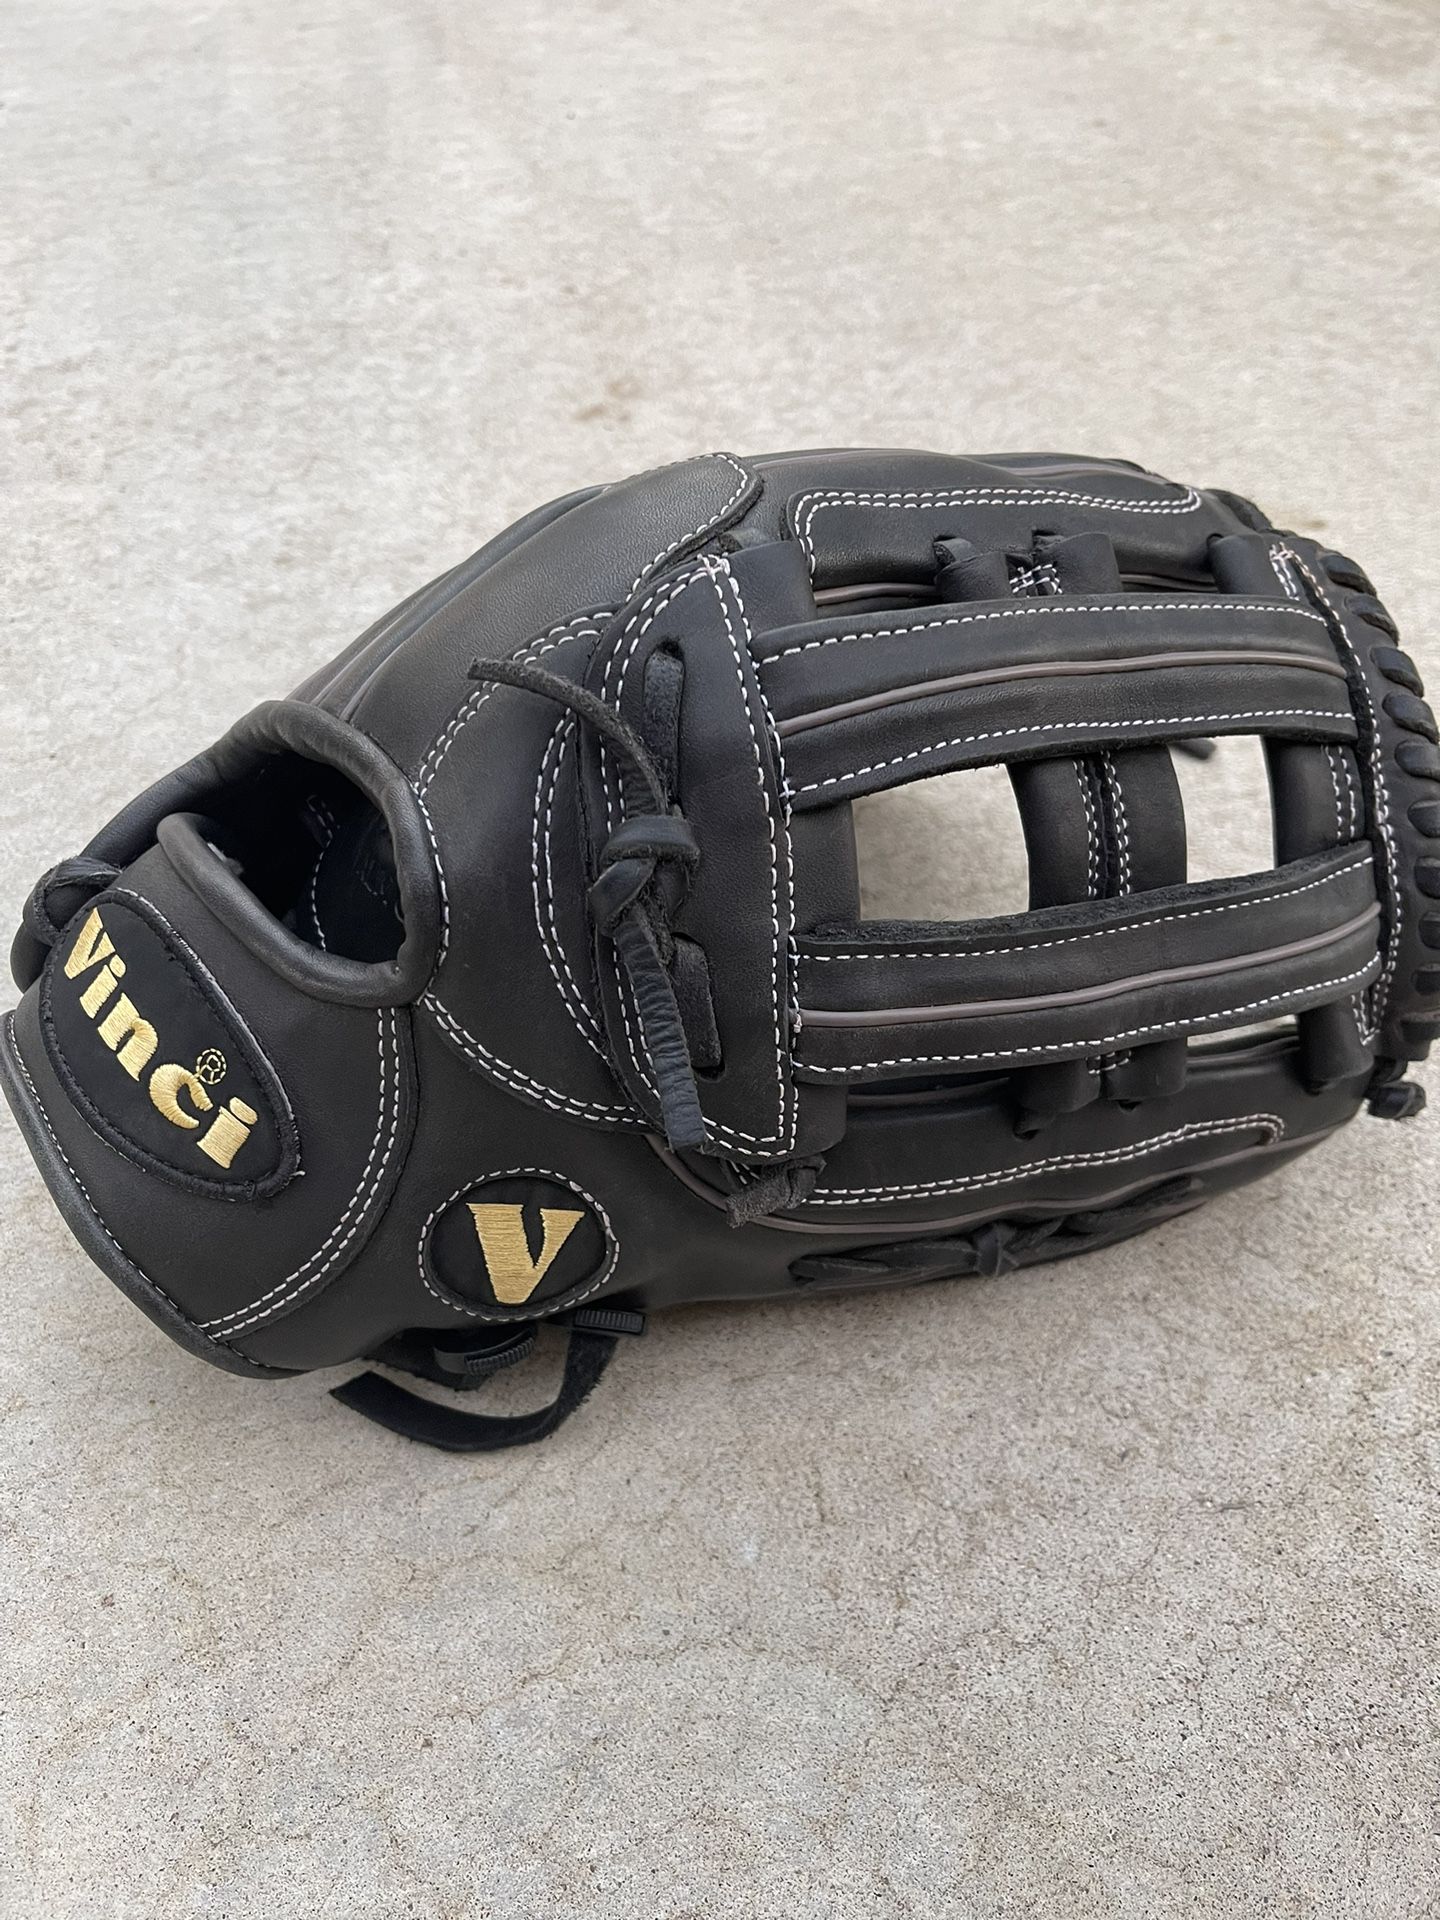 13.5 Vinci Softball Glove